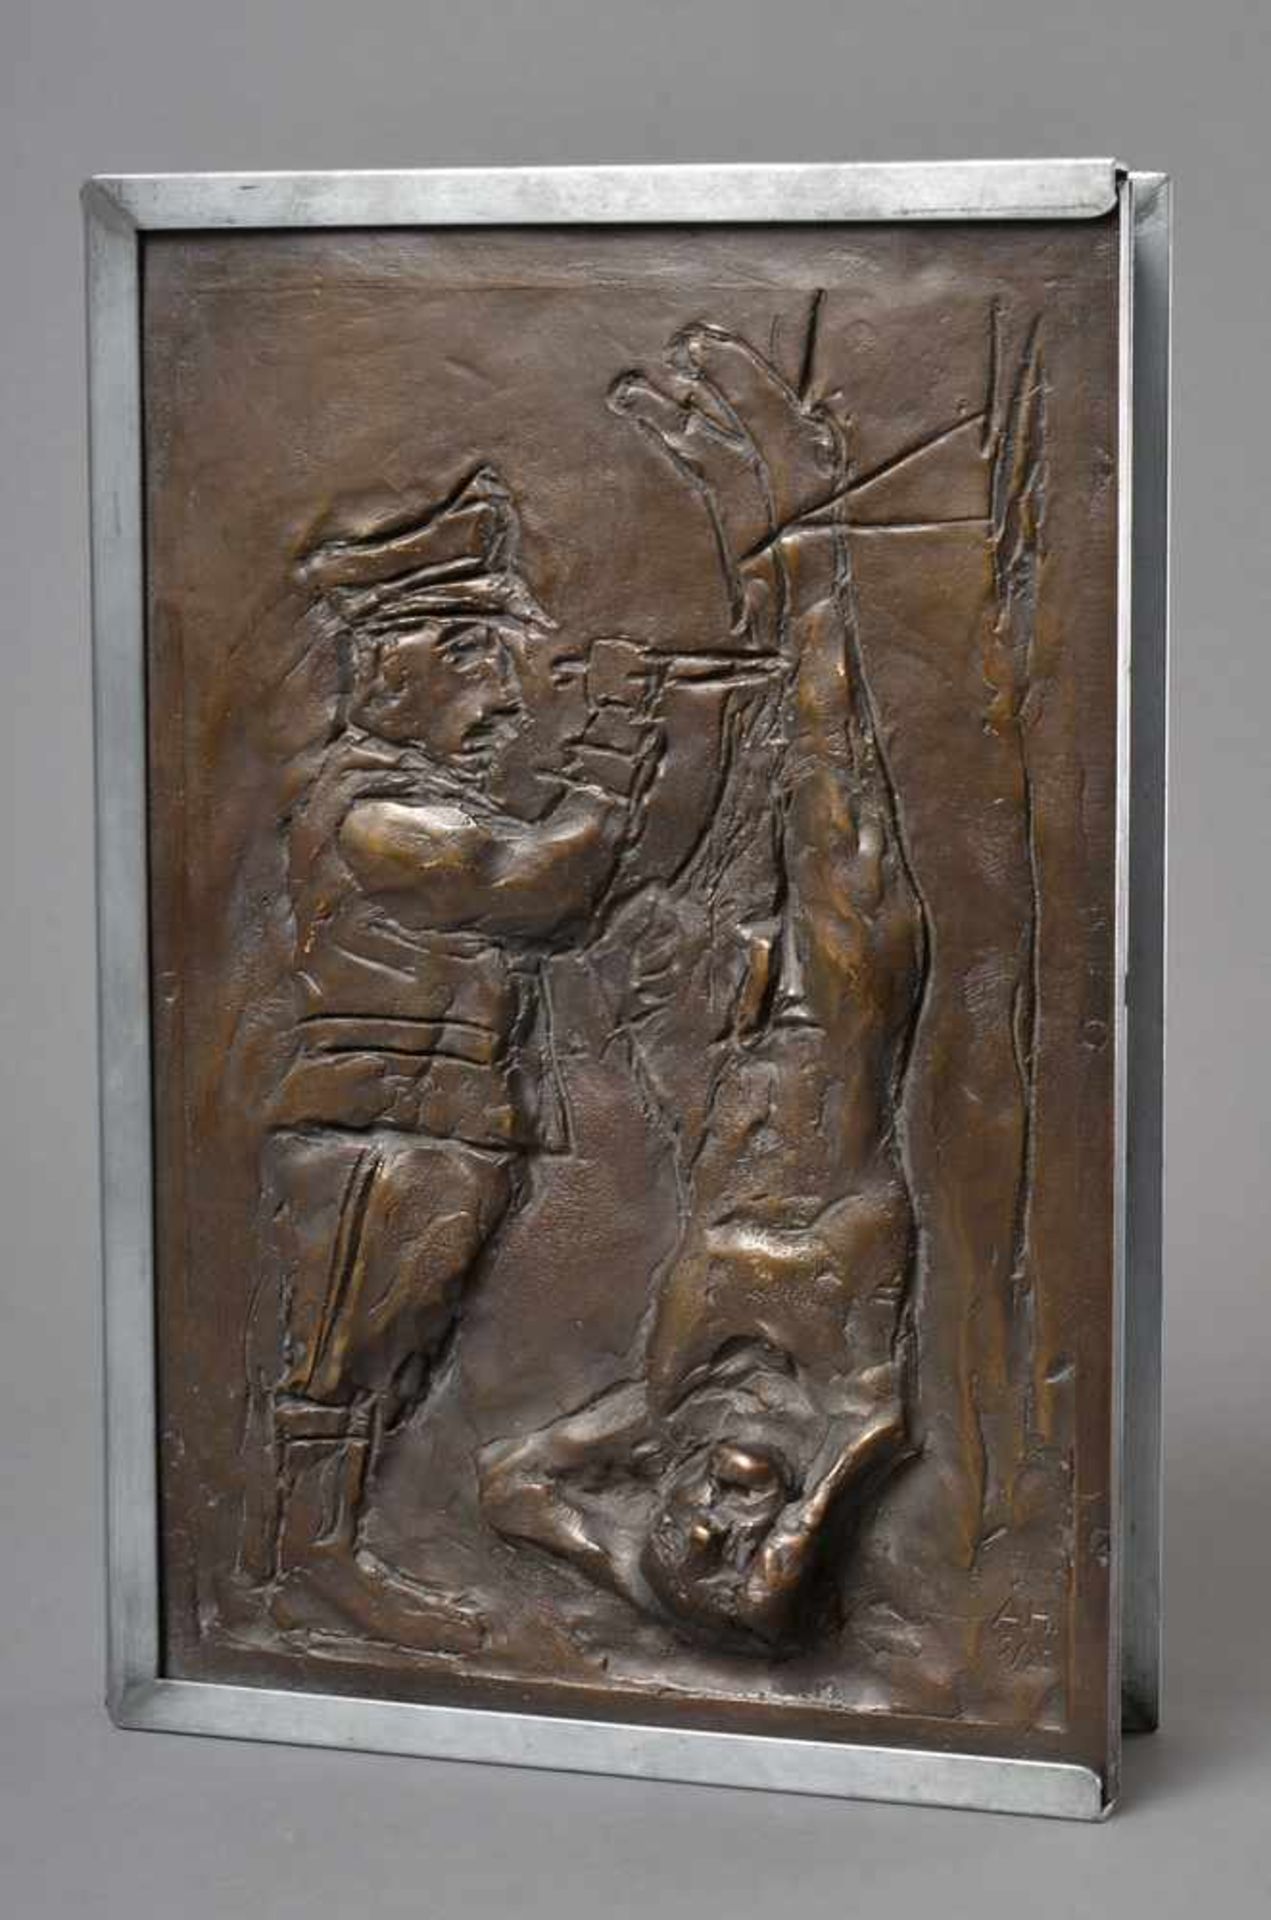 Hrdlicka, Alfred (1928-2009) "Anatomie des Leids", Buch in Schatulle mit Bronze Relief, 7/20, 36,